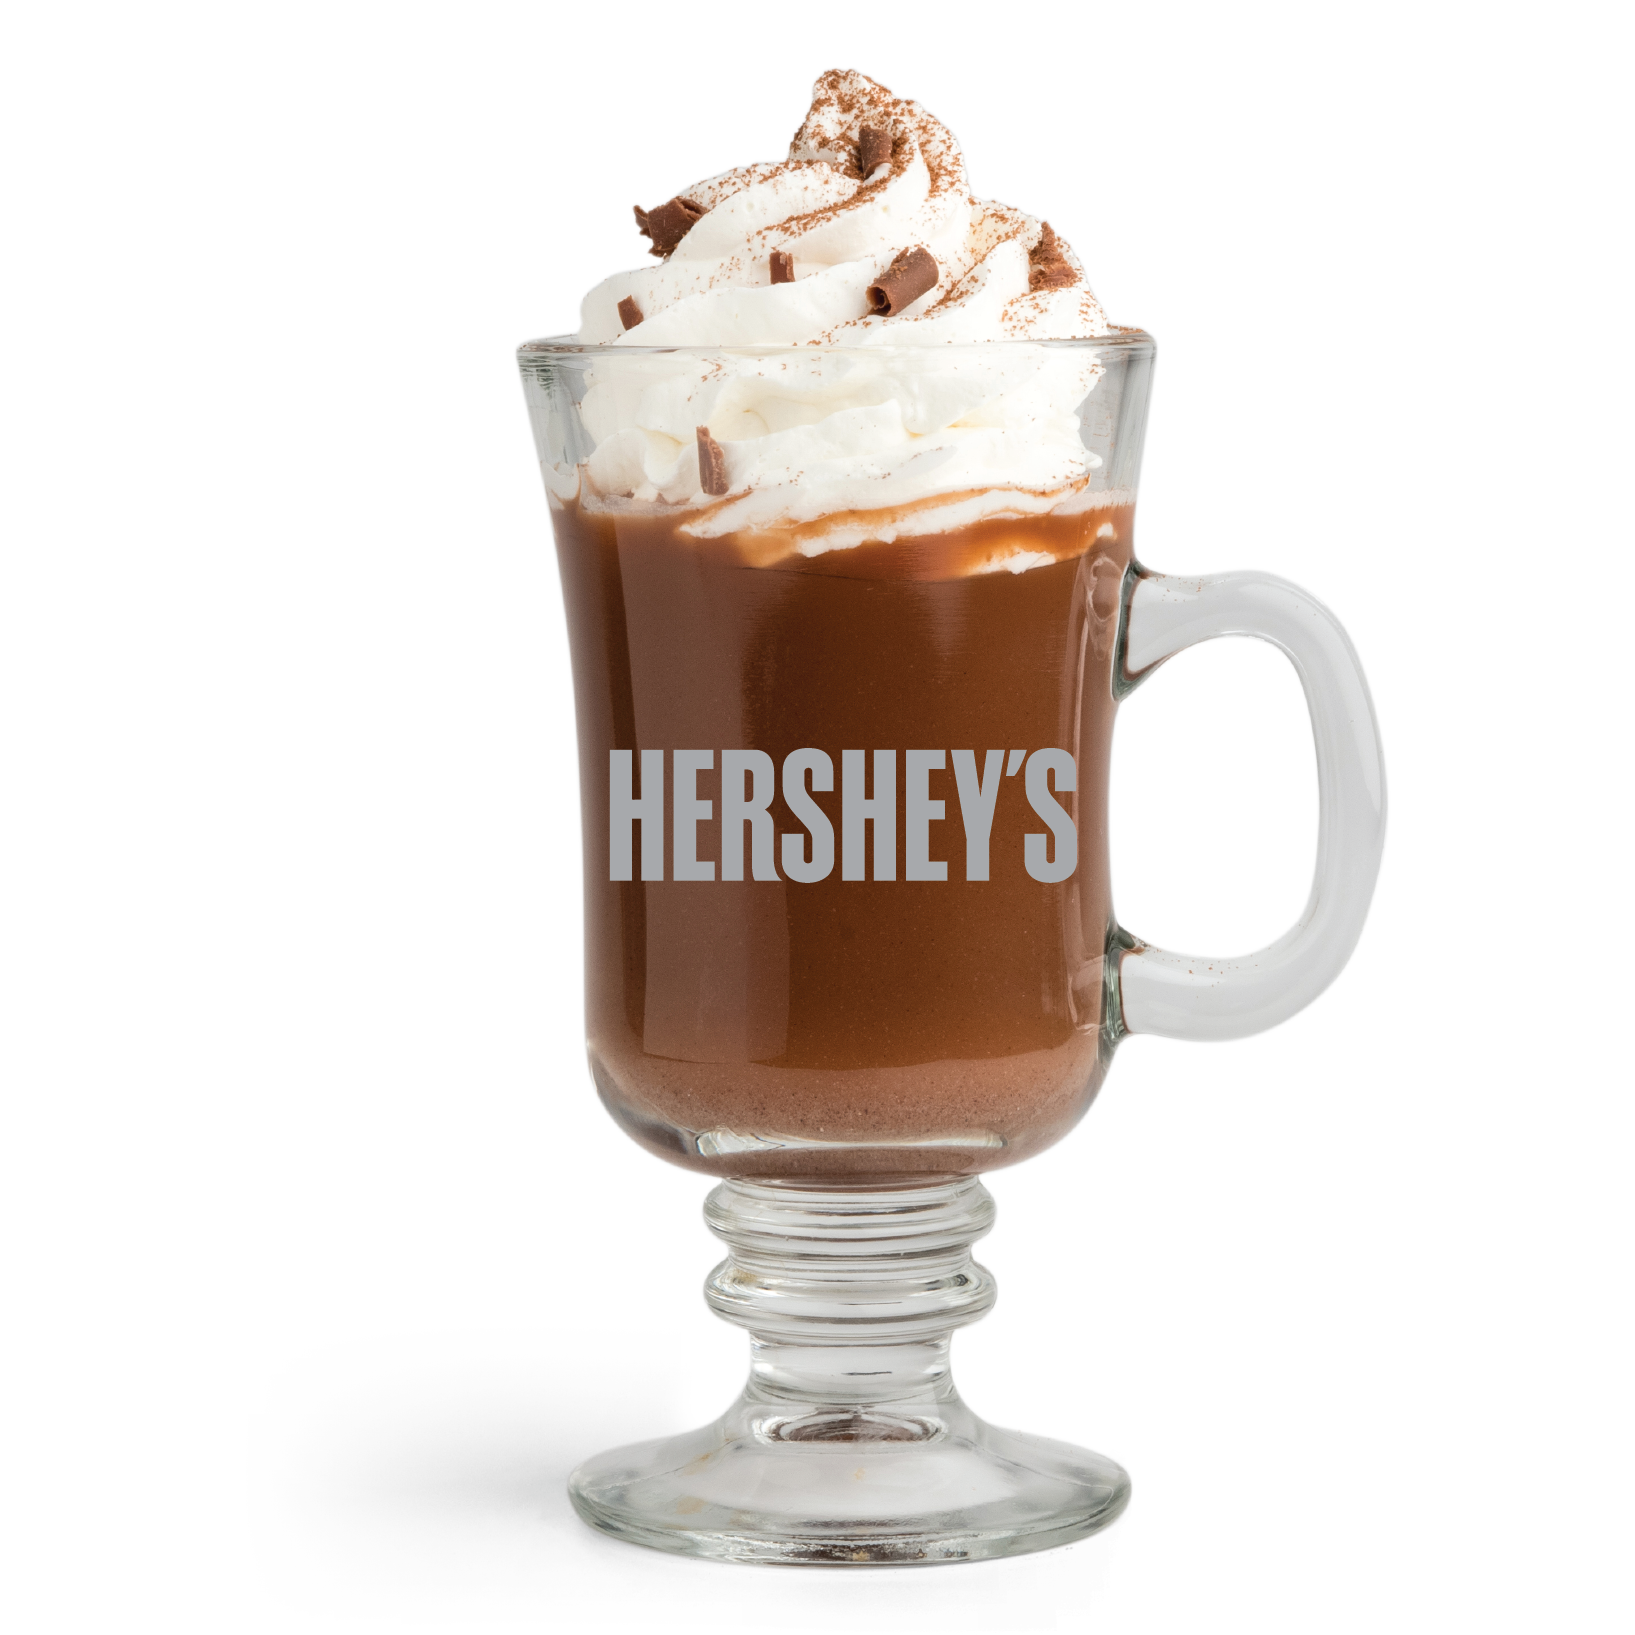 HERSHEY'S Hot Chocolate